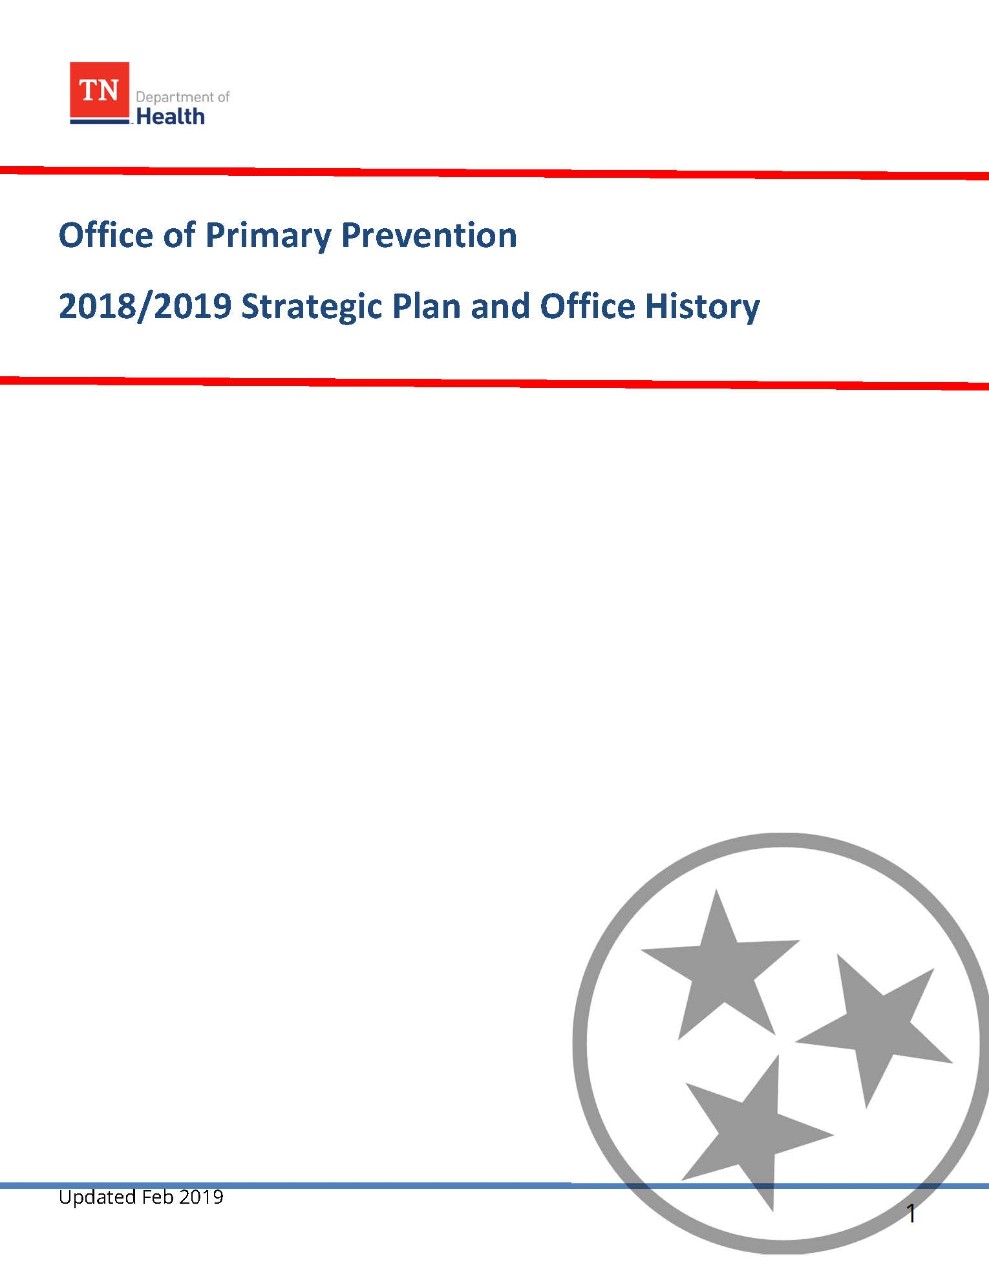 OPP Strategic Plan